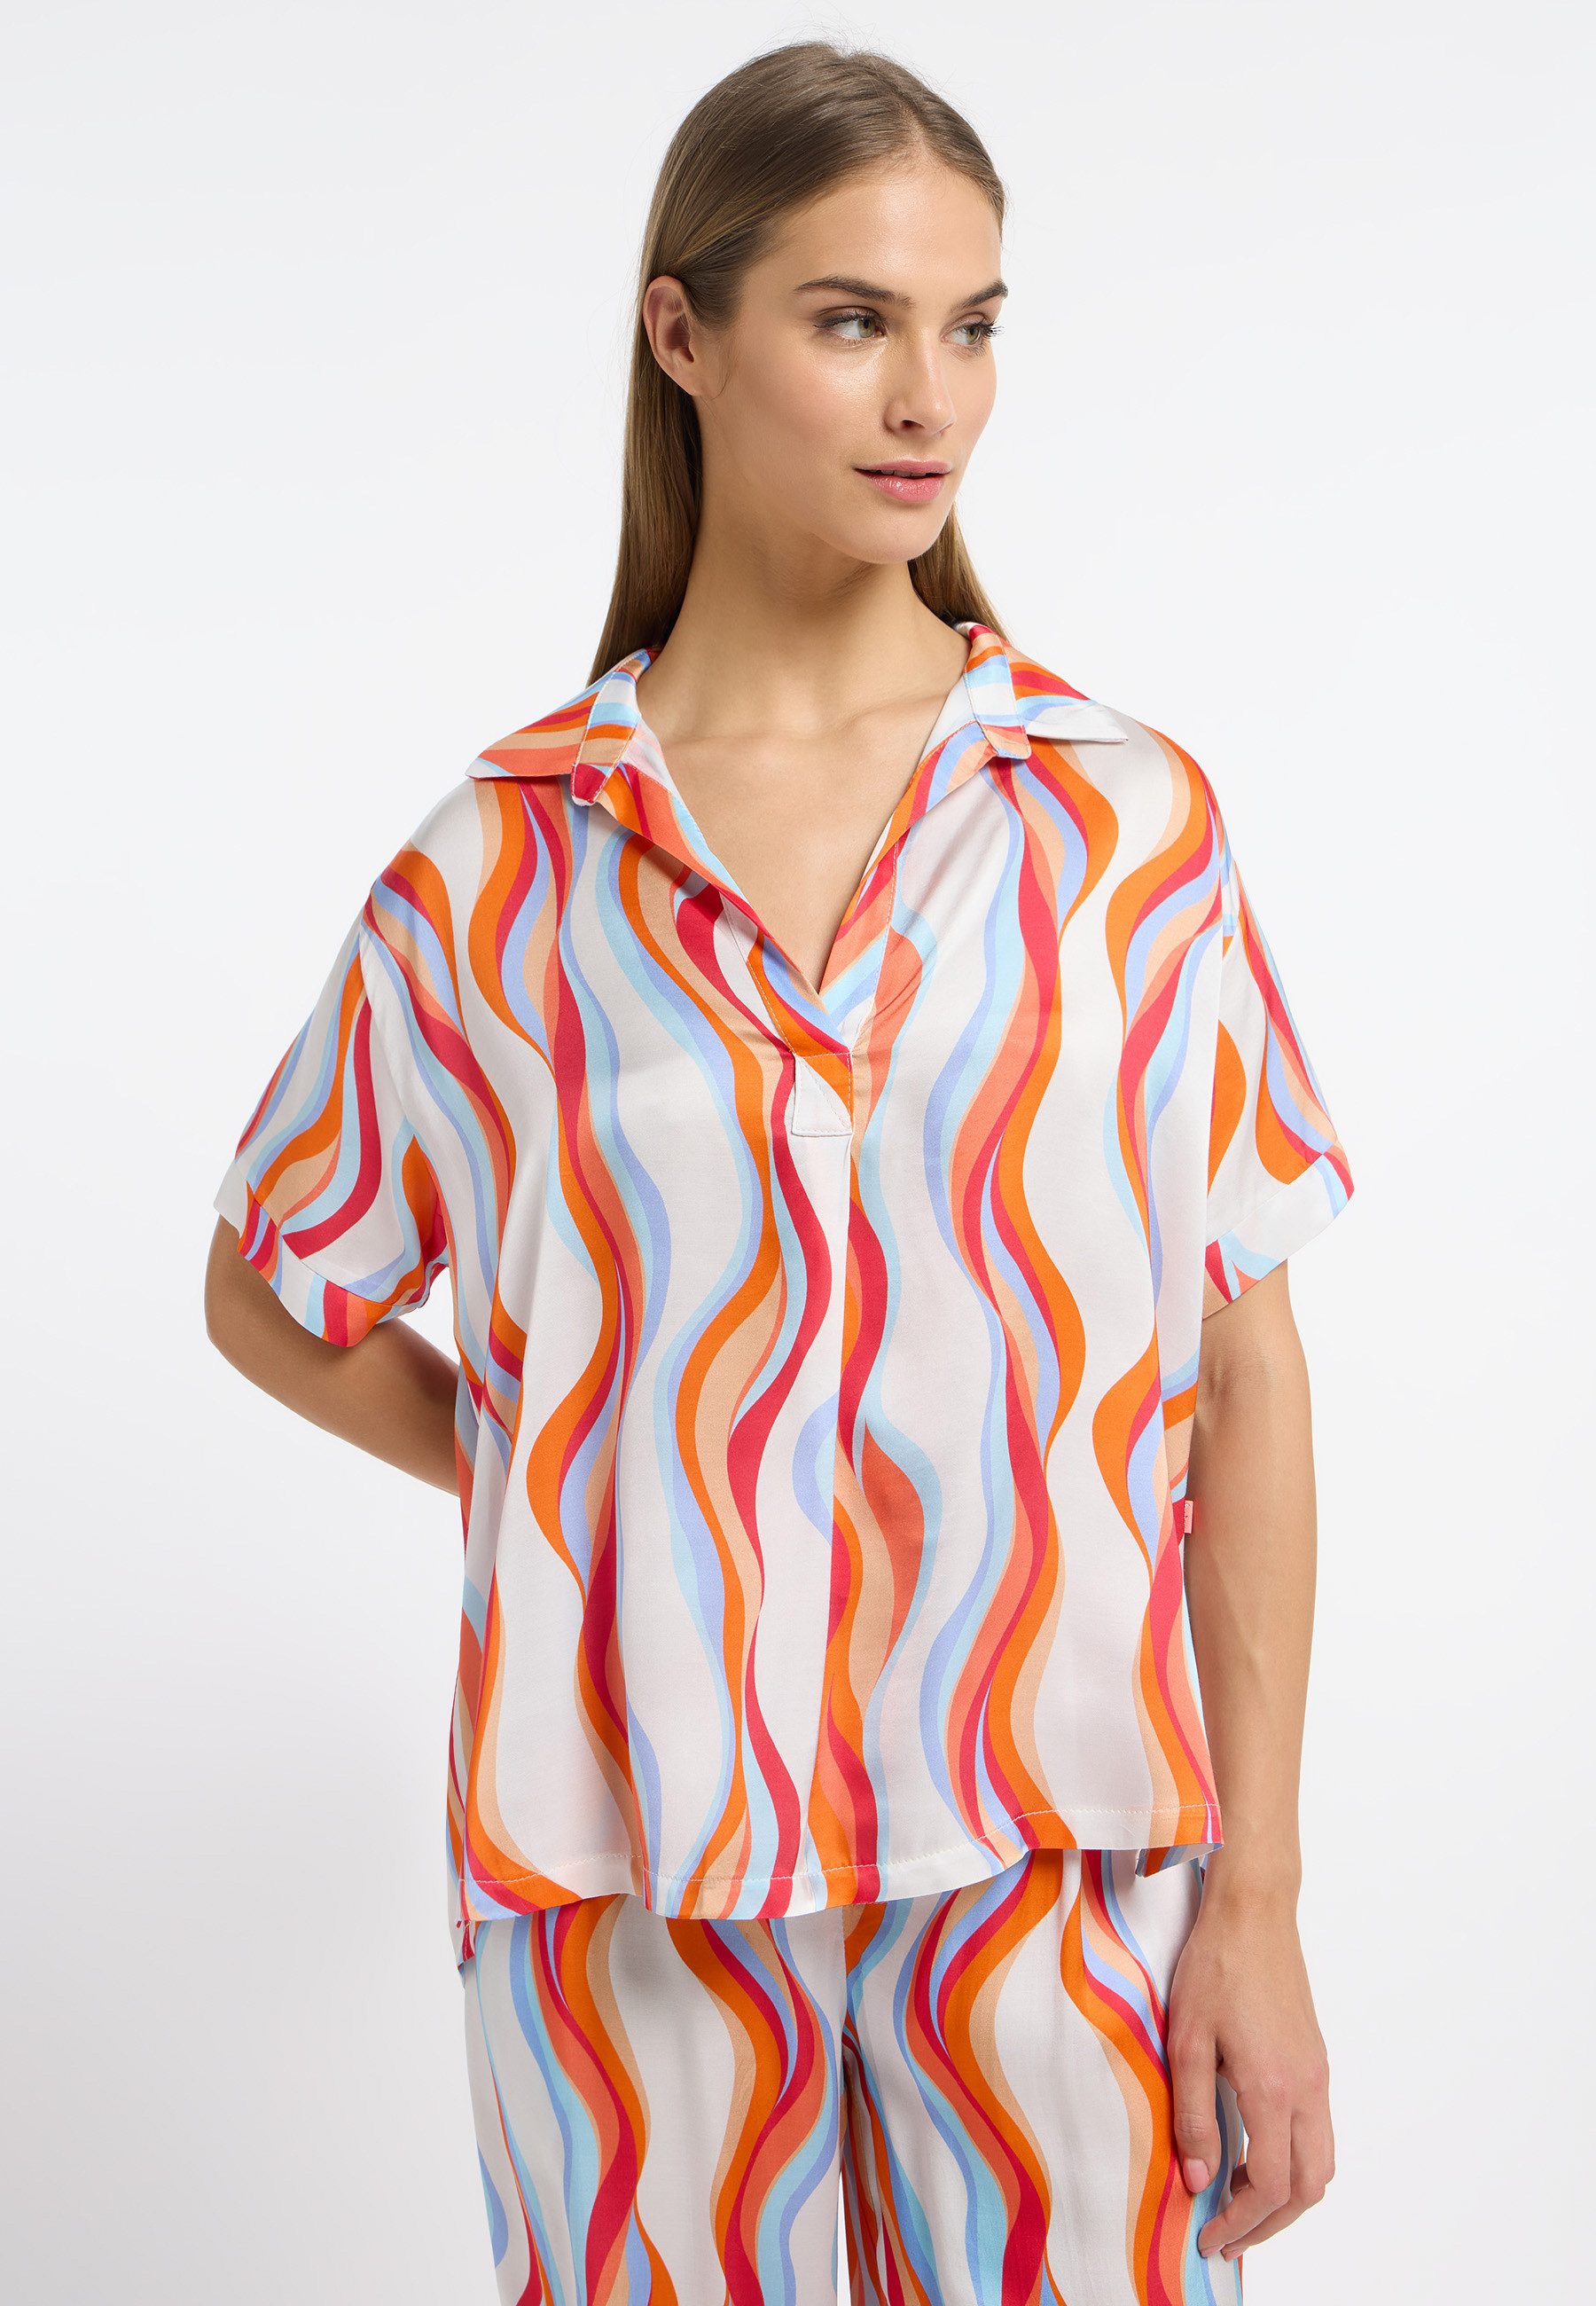 Frieda & Freddies NY Klassische Bluse Blouse Shirt mit dezenten Farbdetails